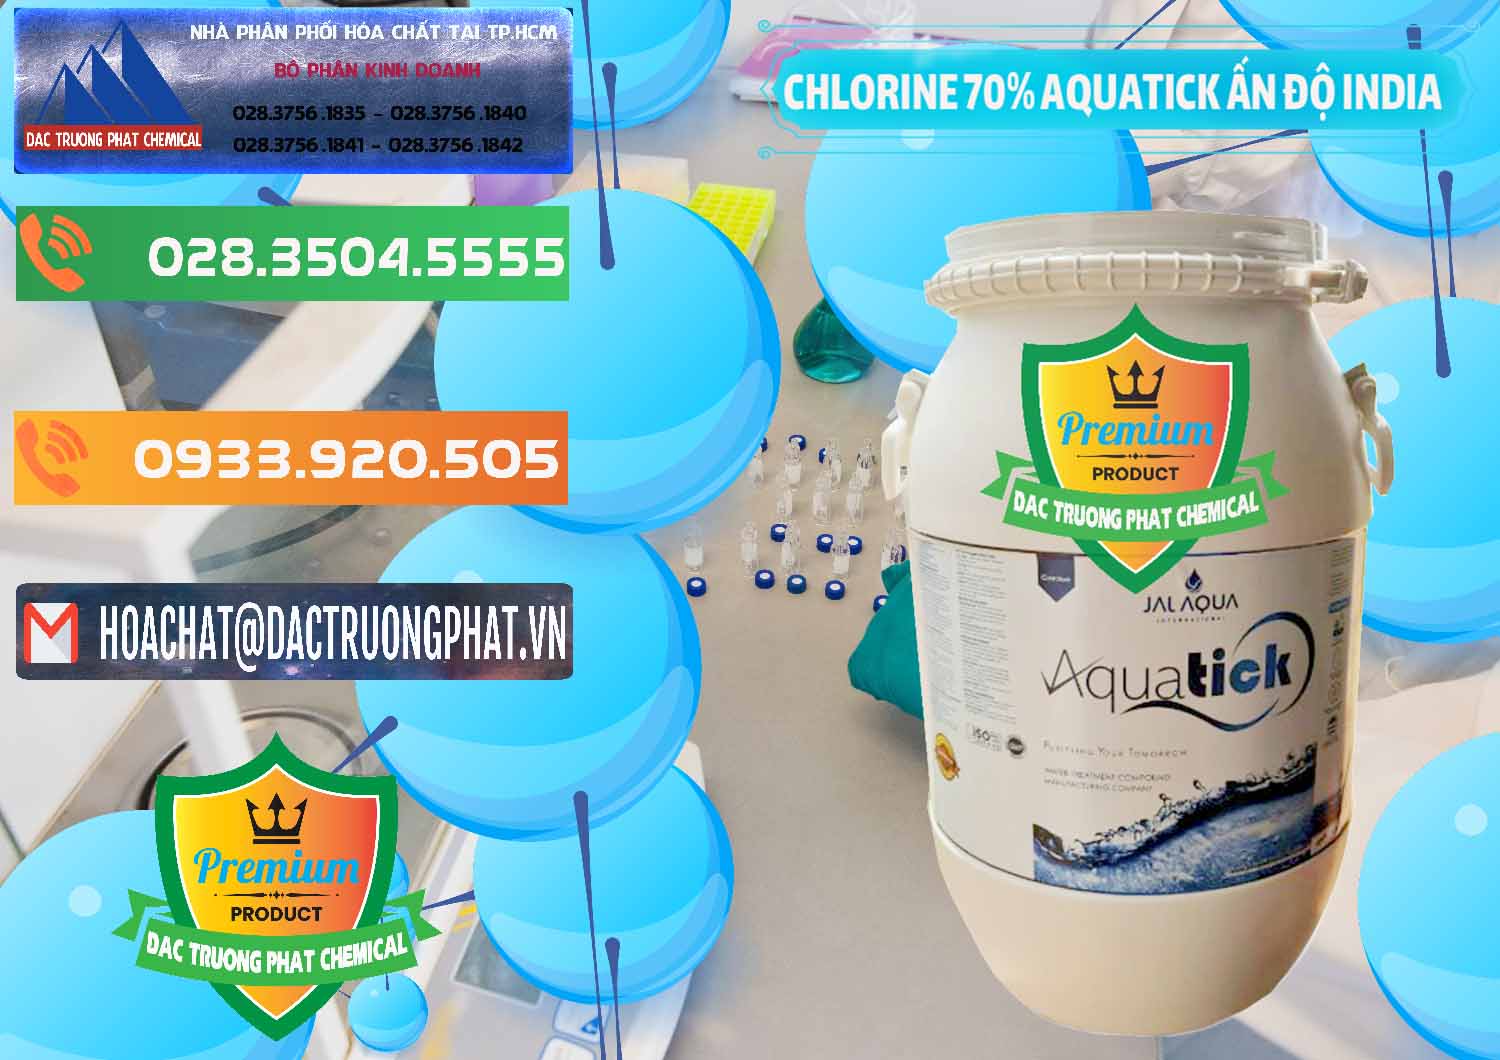 Công ty phân phối & bán Chlorine – Clorin 70% Aquatick Jal Aqua Ấn Độ India - 0215 - Công ty phân phối & cung cấp hóa chất tại TP.HCM - hoachatxulynuoc.com.vn